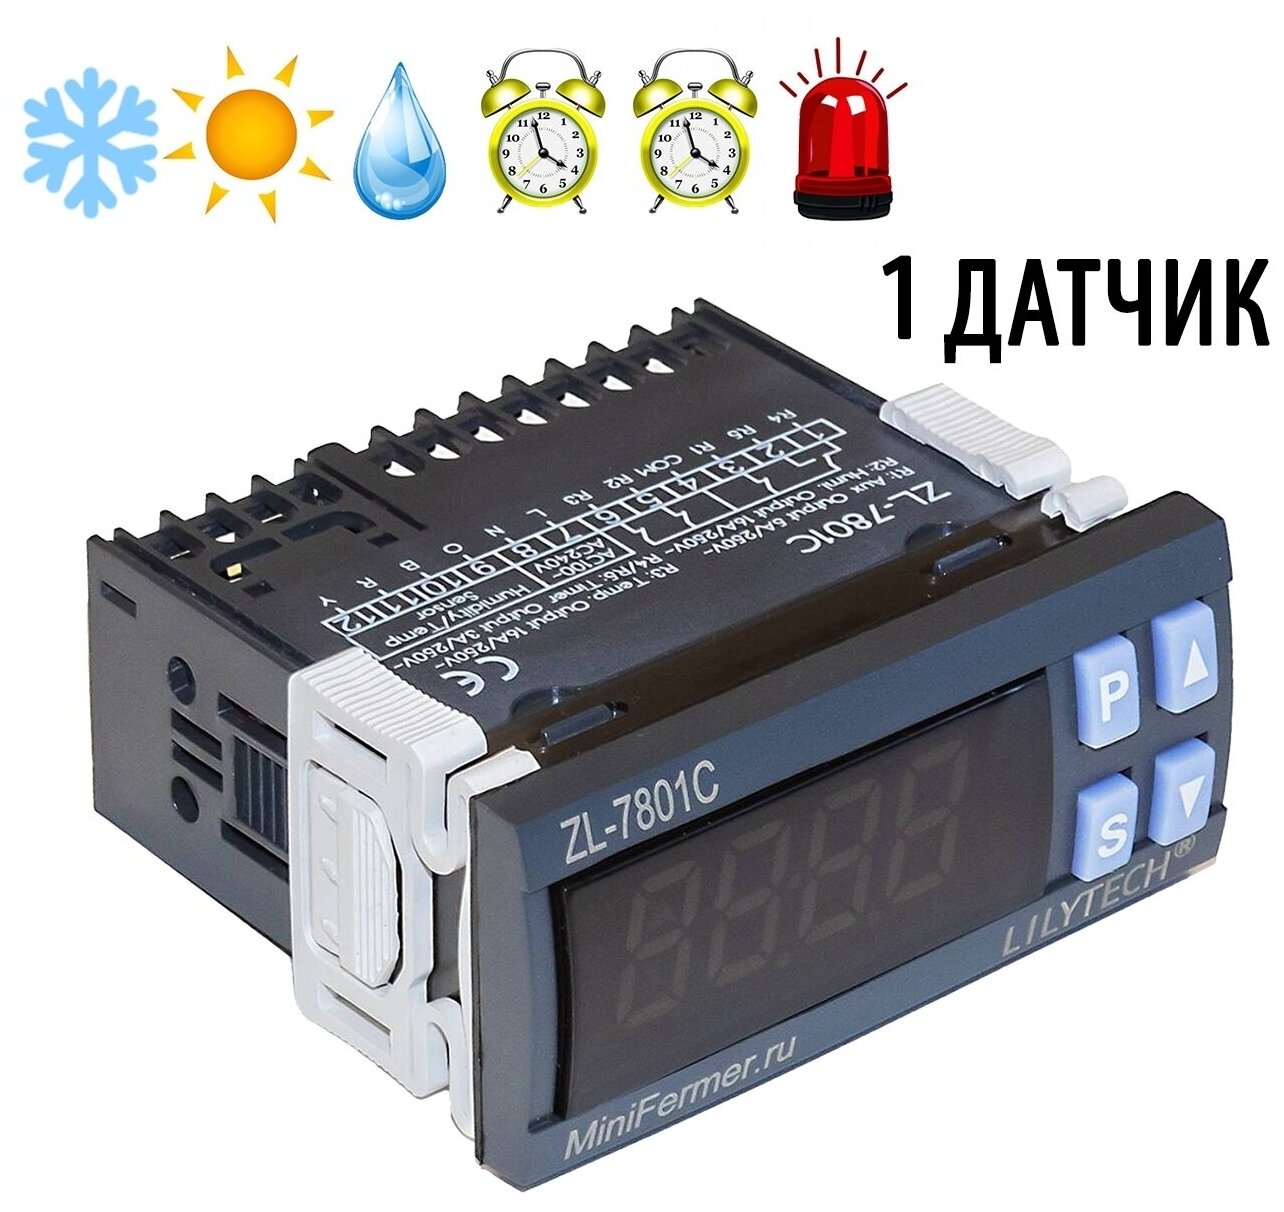 Контроллер LILYTECH ZL-7801C (темп + влажность + 2 таймера)